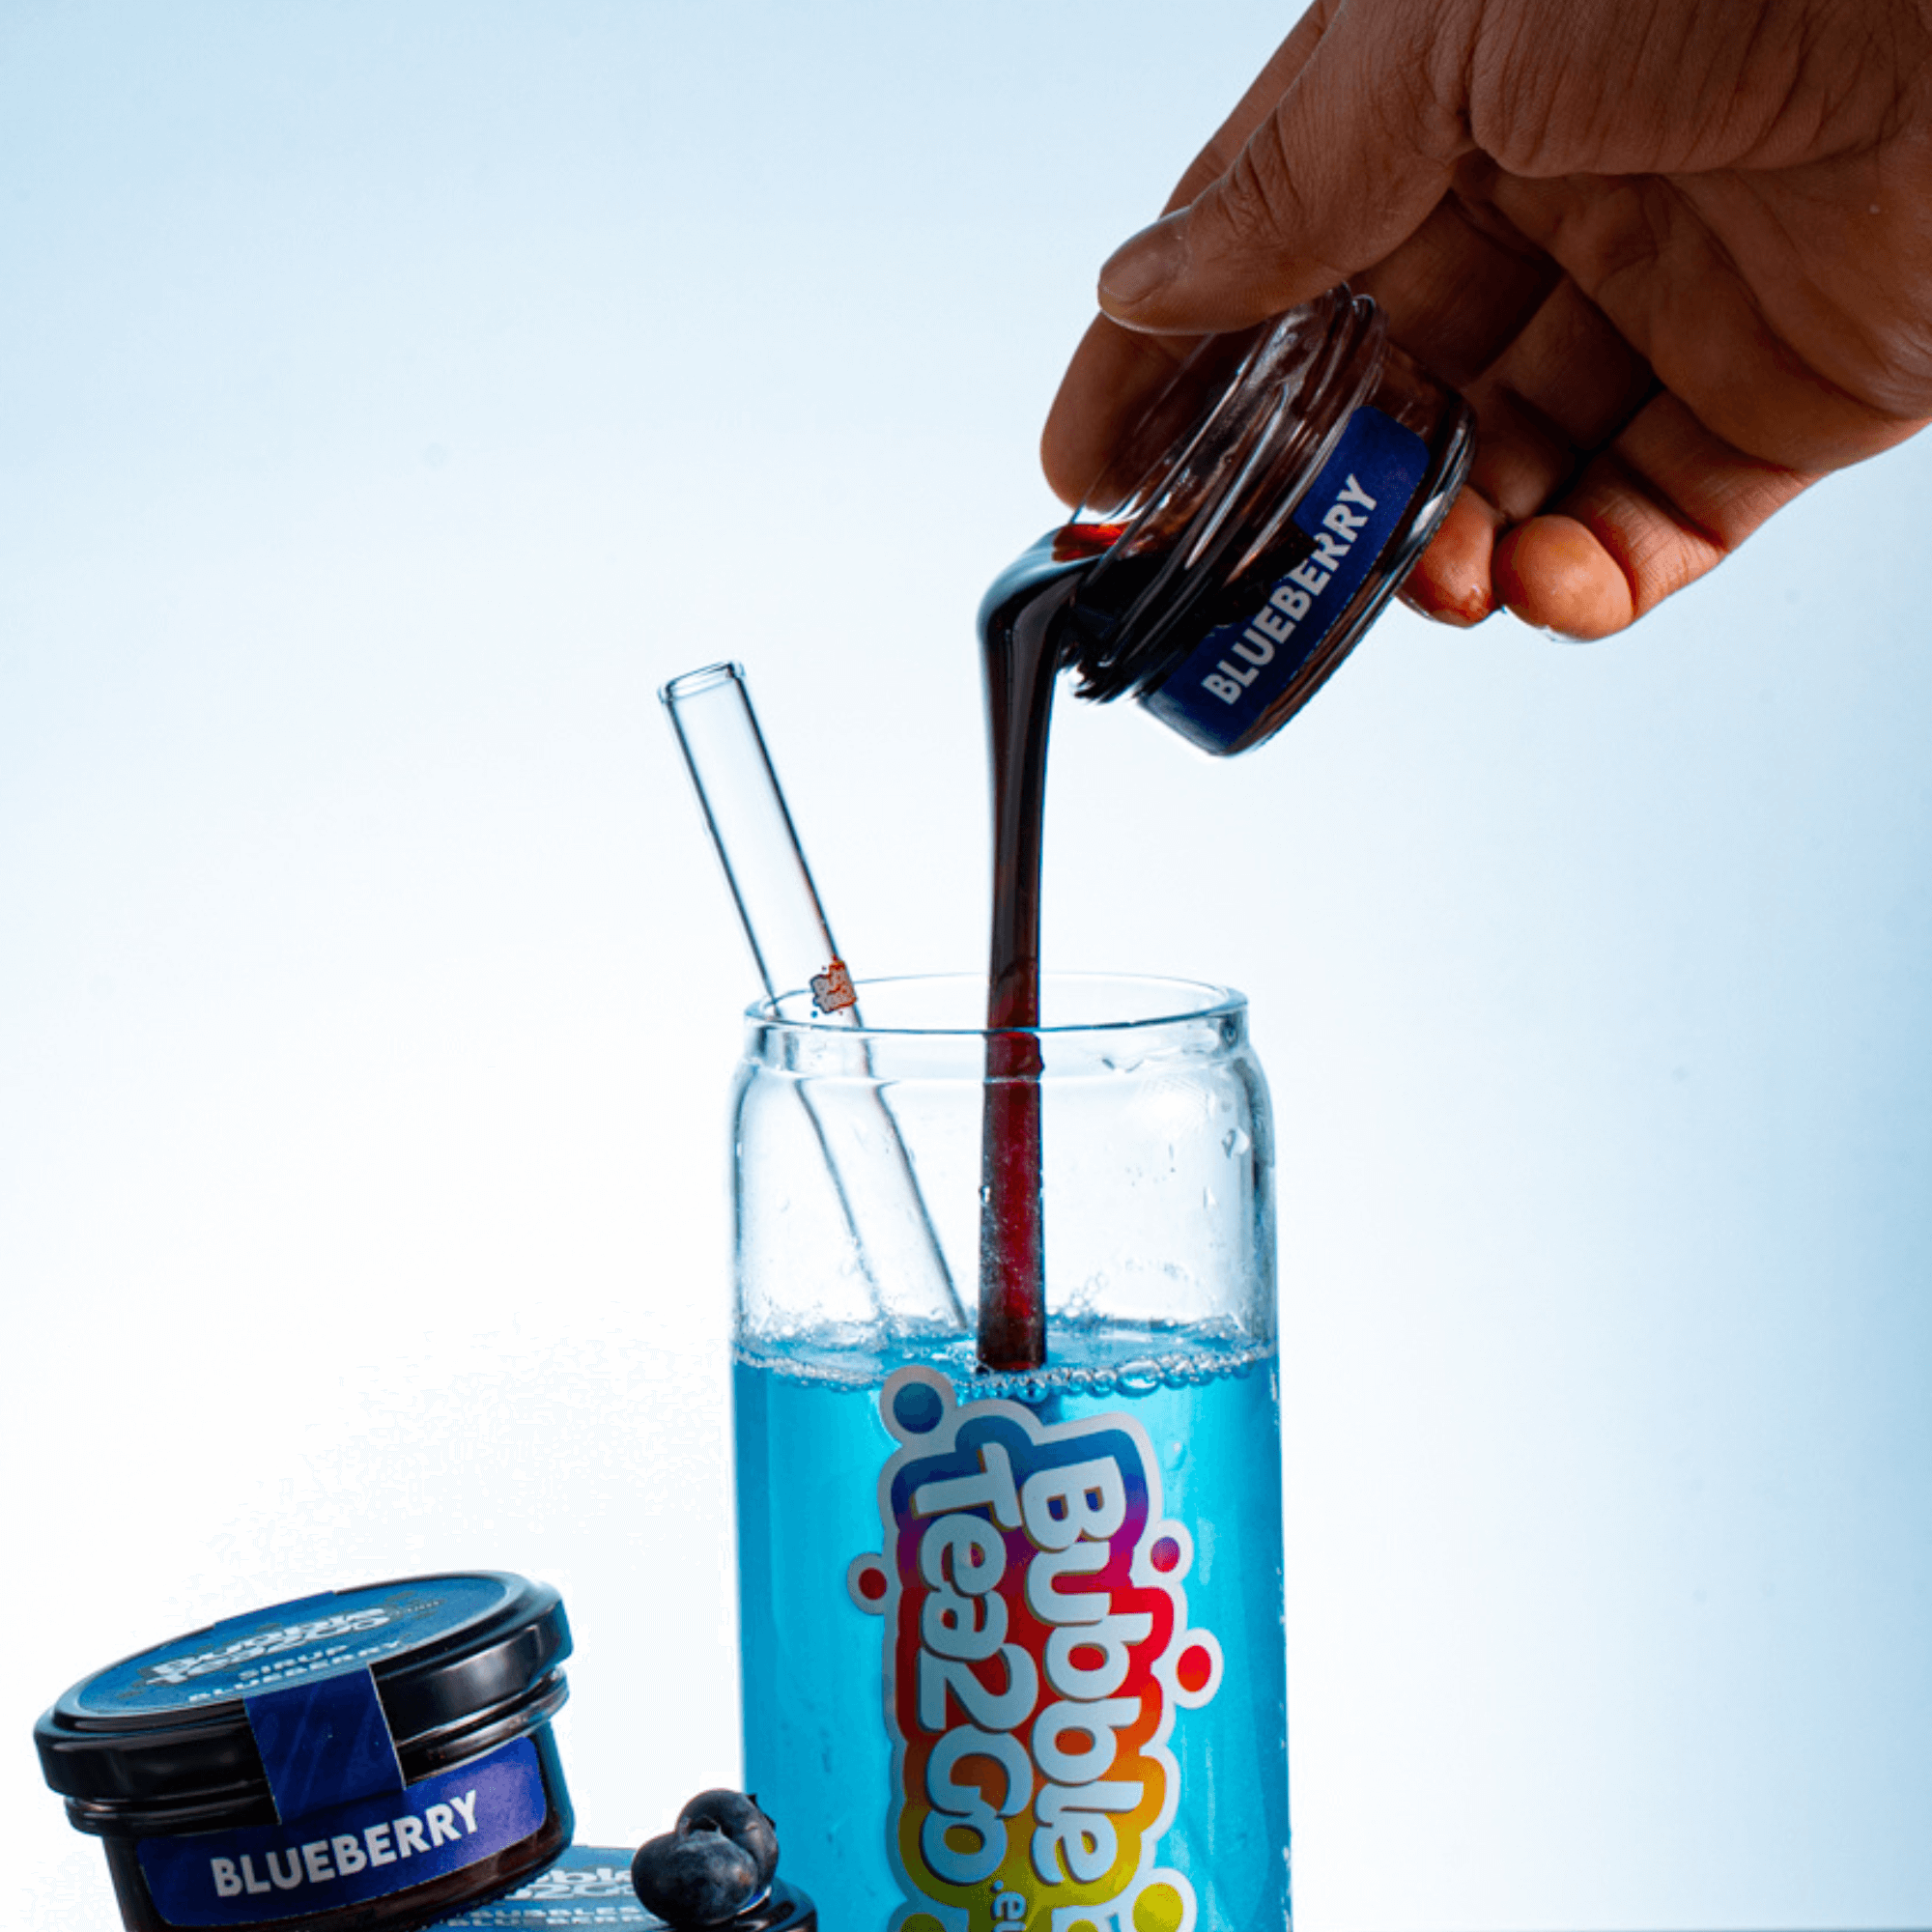 Sirup - Blueberry 2 Portionen (100g)